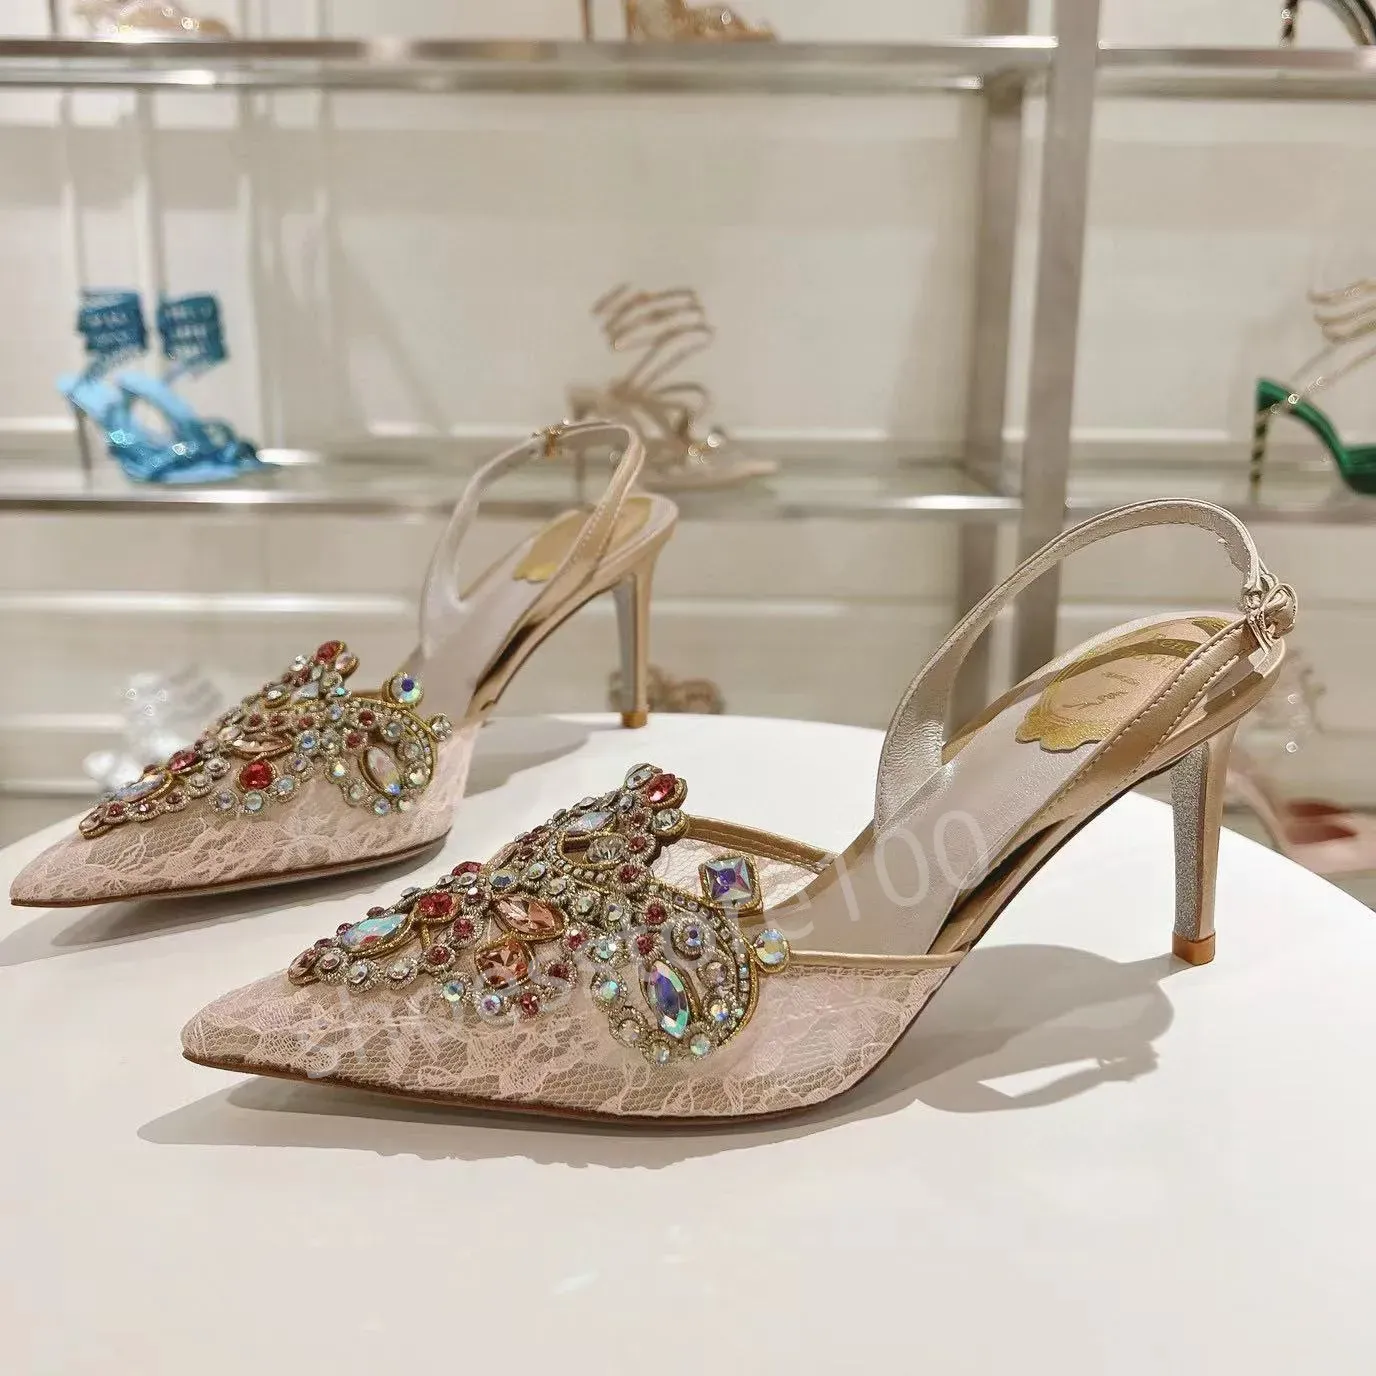 Chaussures René Caovilla Margot Sandales en daim embelli Sandals Strass Stretto 9,5 Talons Designers de luxe à talons hauts pour femmes